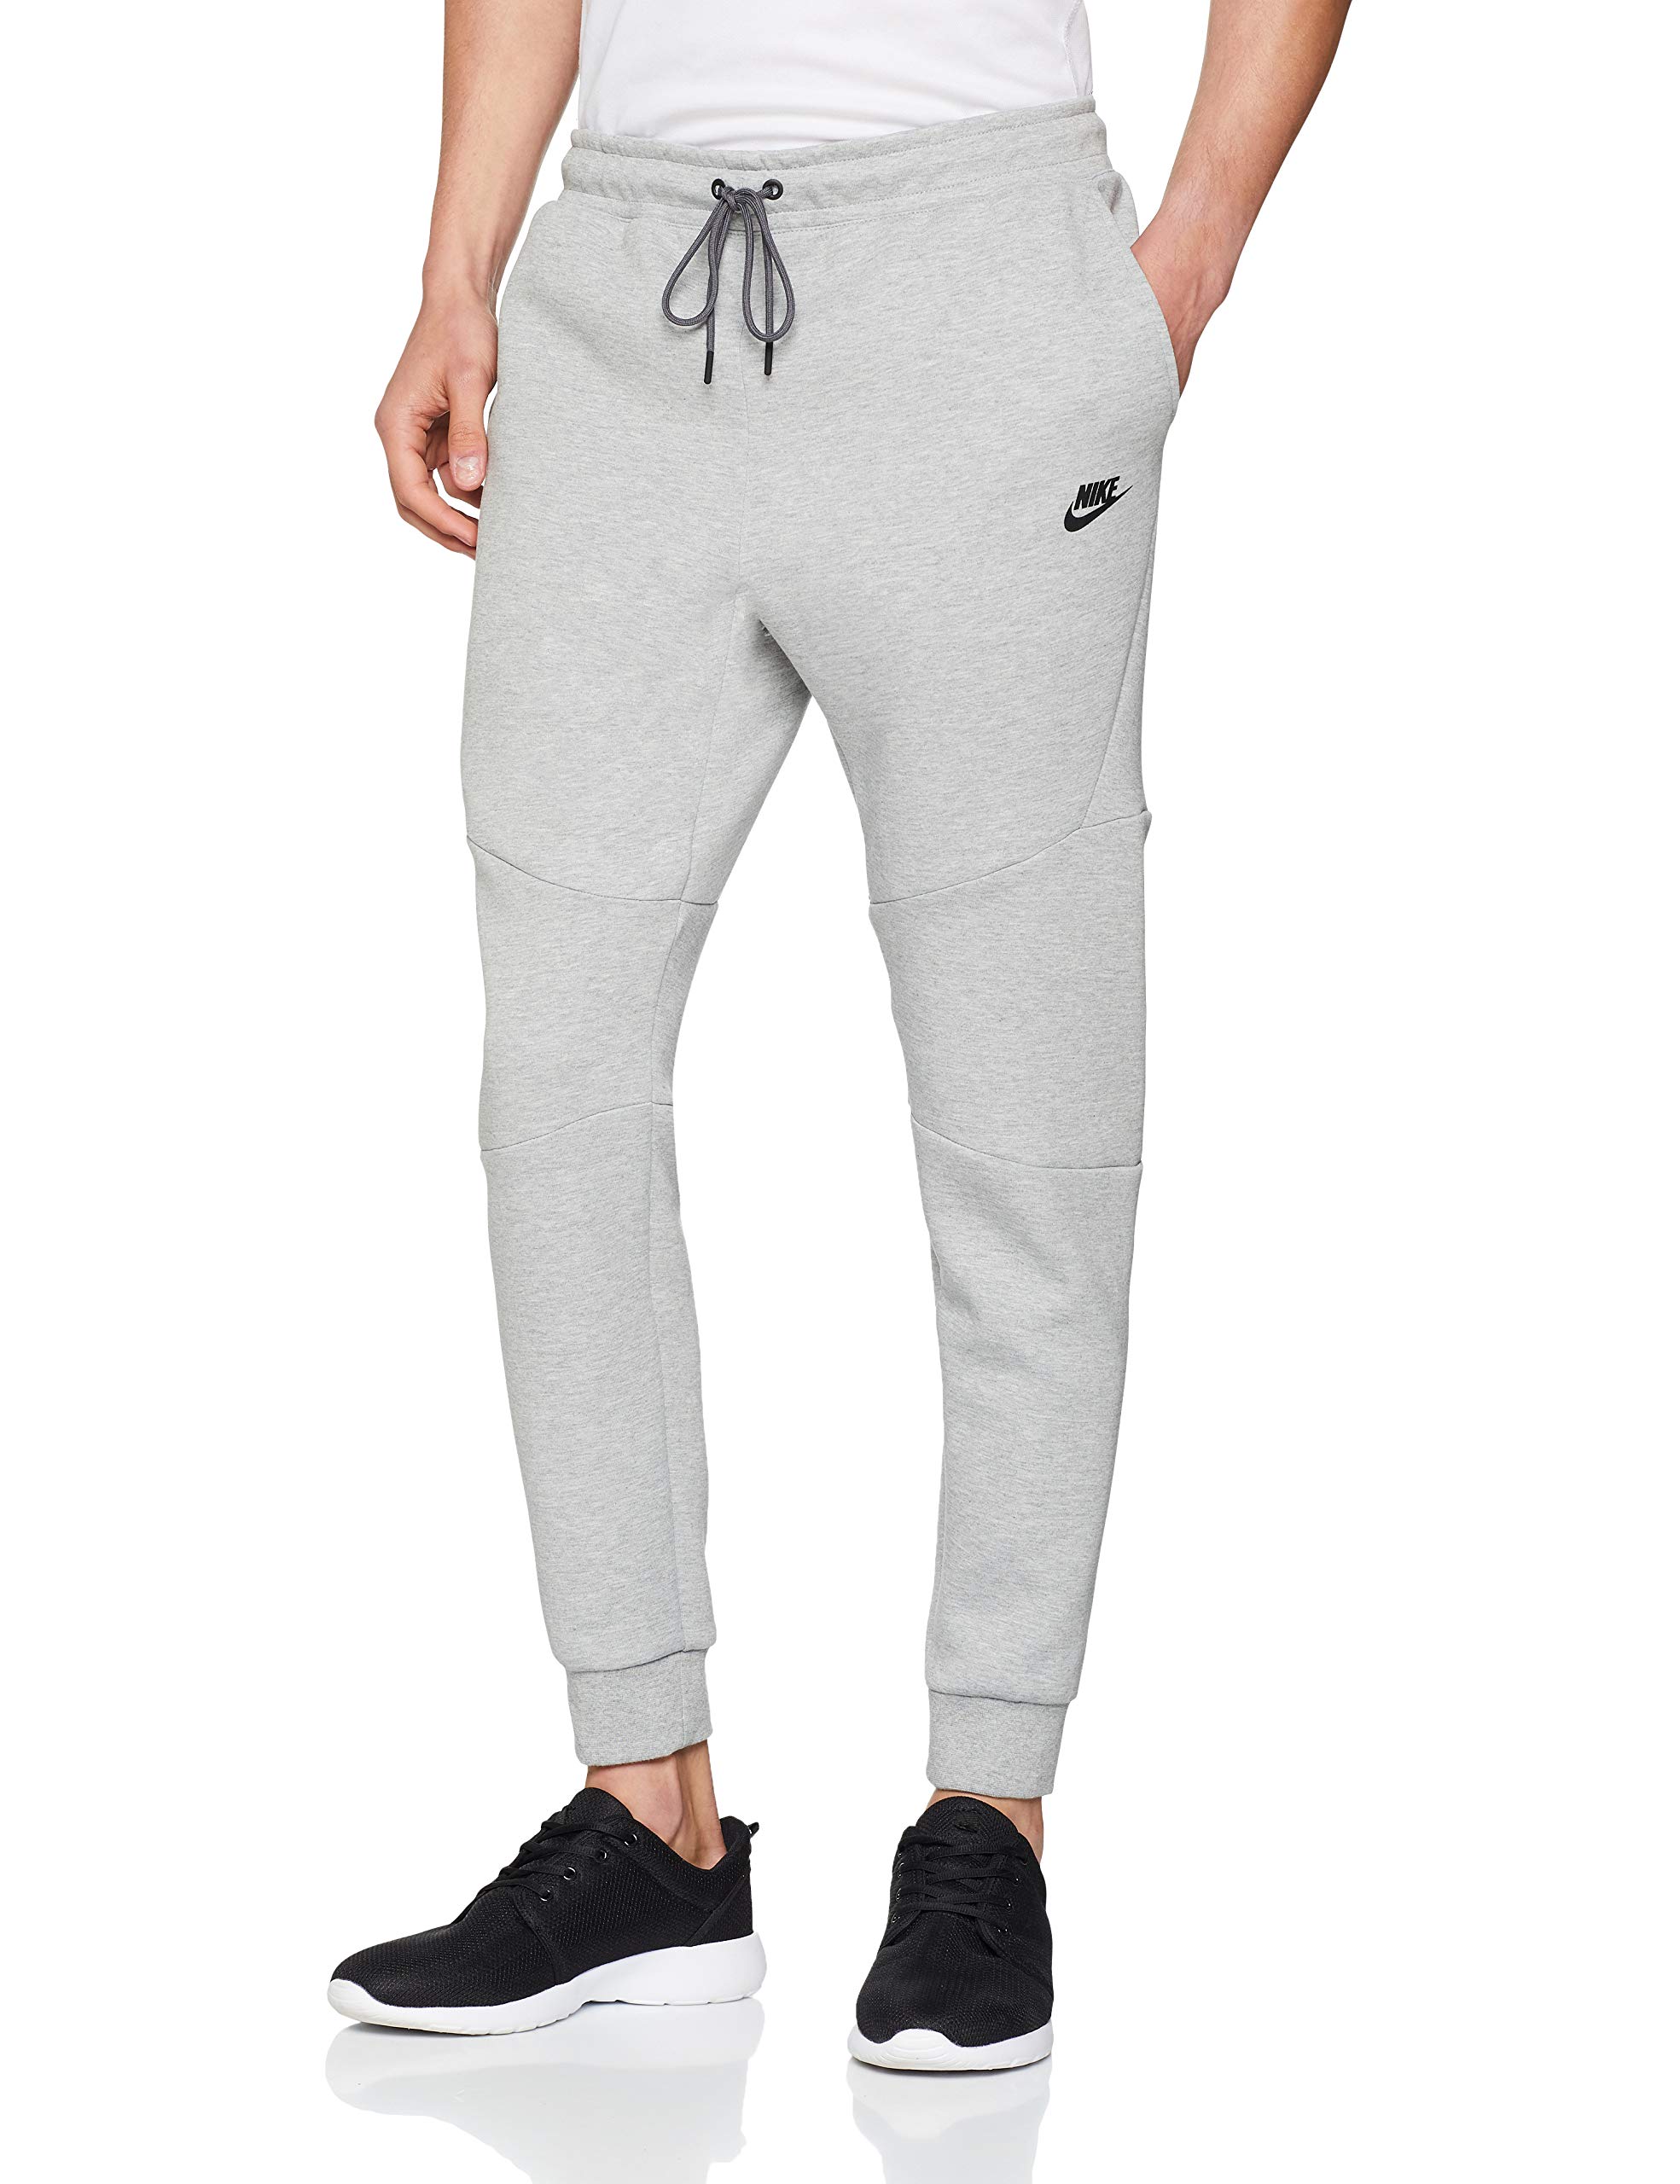 Nike Mens Sportswear Tech Fleece Jogger Sweatpants Large | eBay